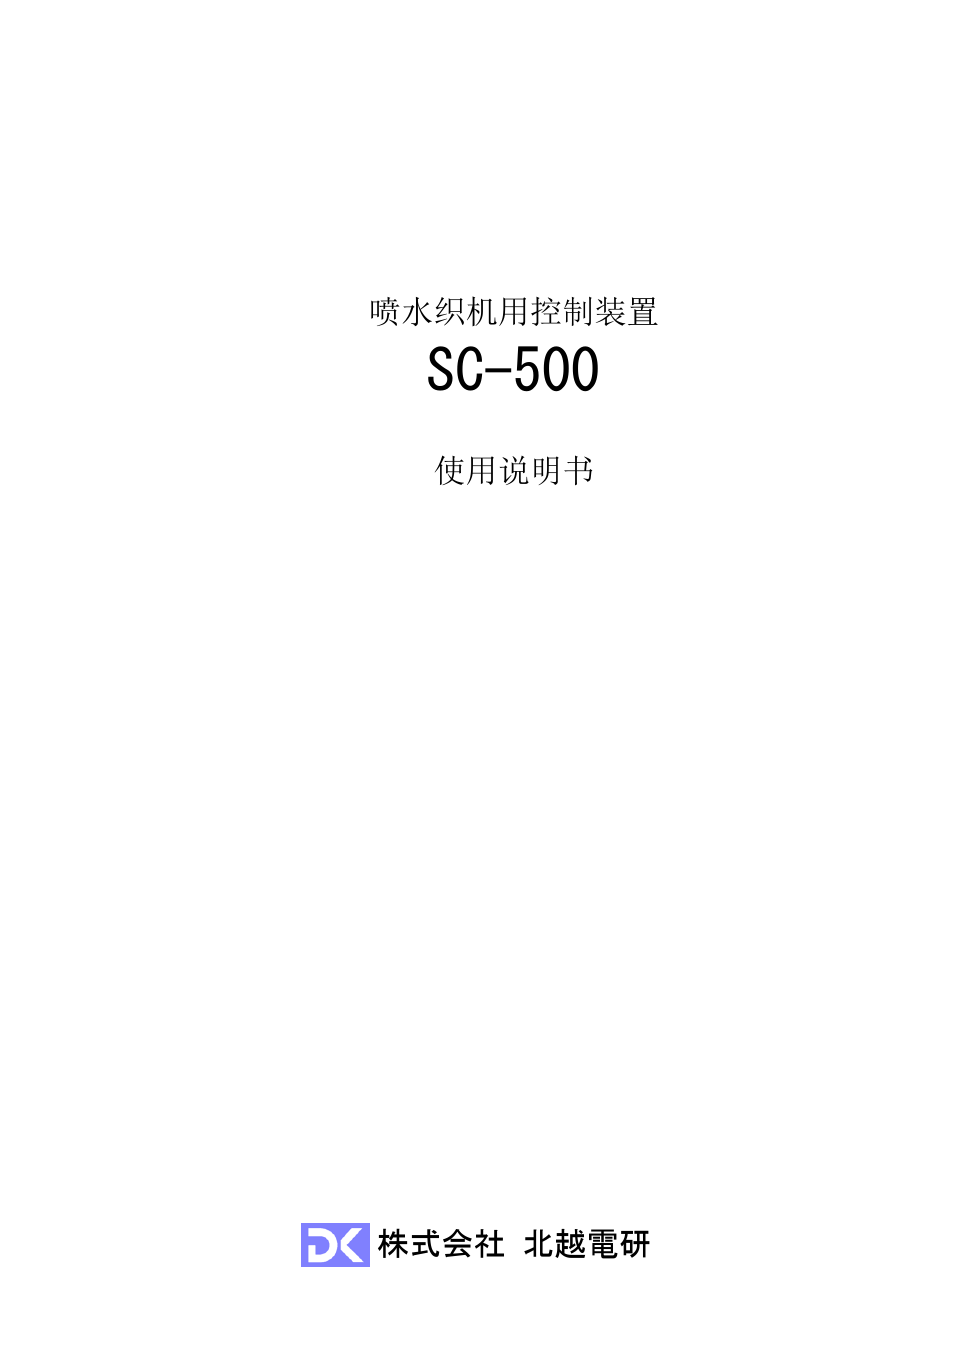 SC500使用说明书